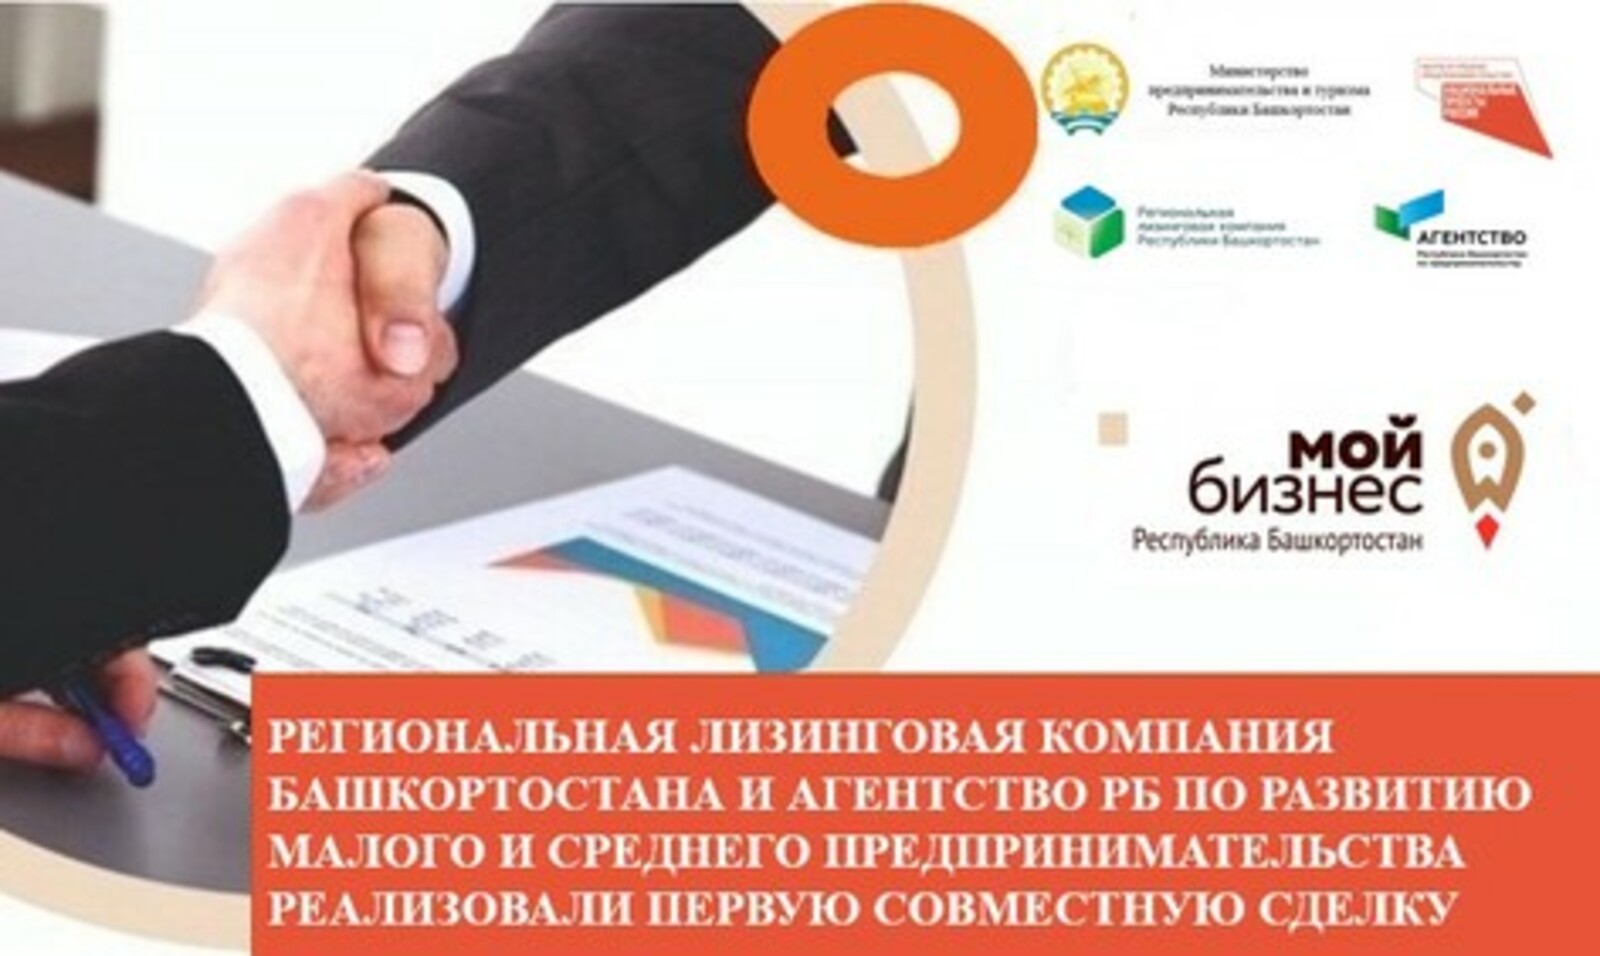 Региональная лизинговая компания Башкортостана и Агентство РБ по развитию малого и среднего предпринимательства реализовали первую совместную сделку